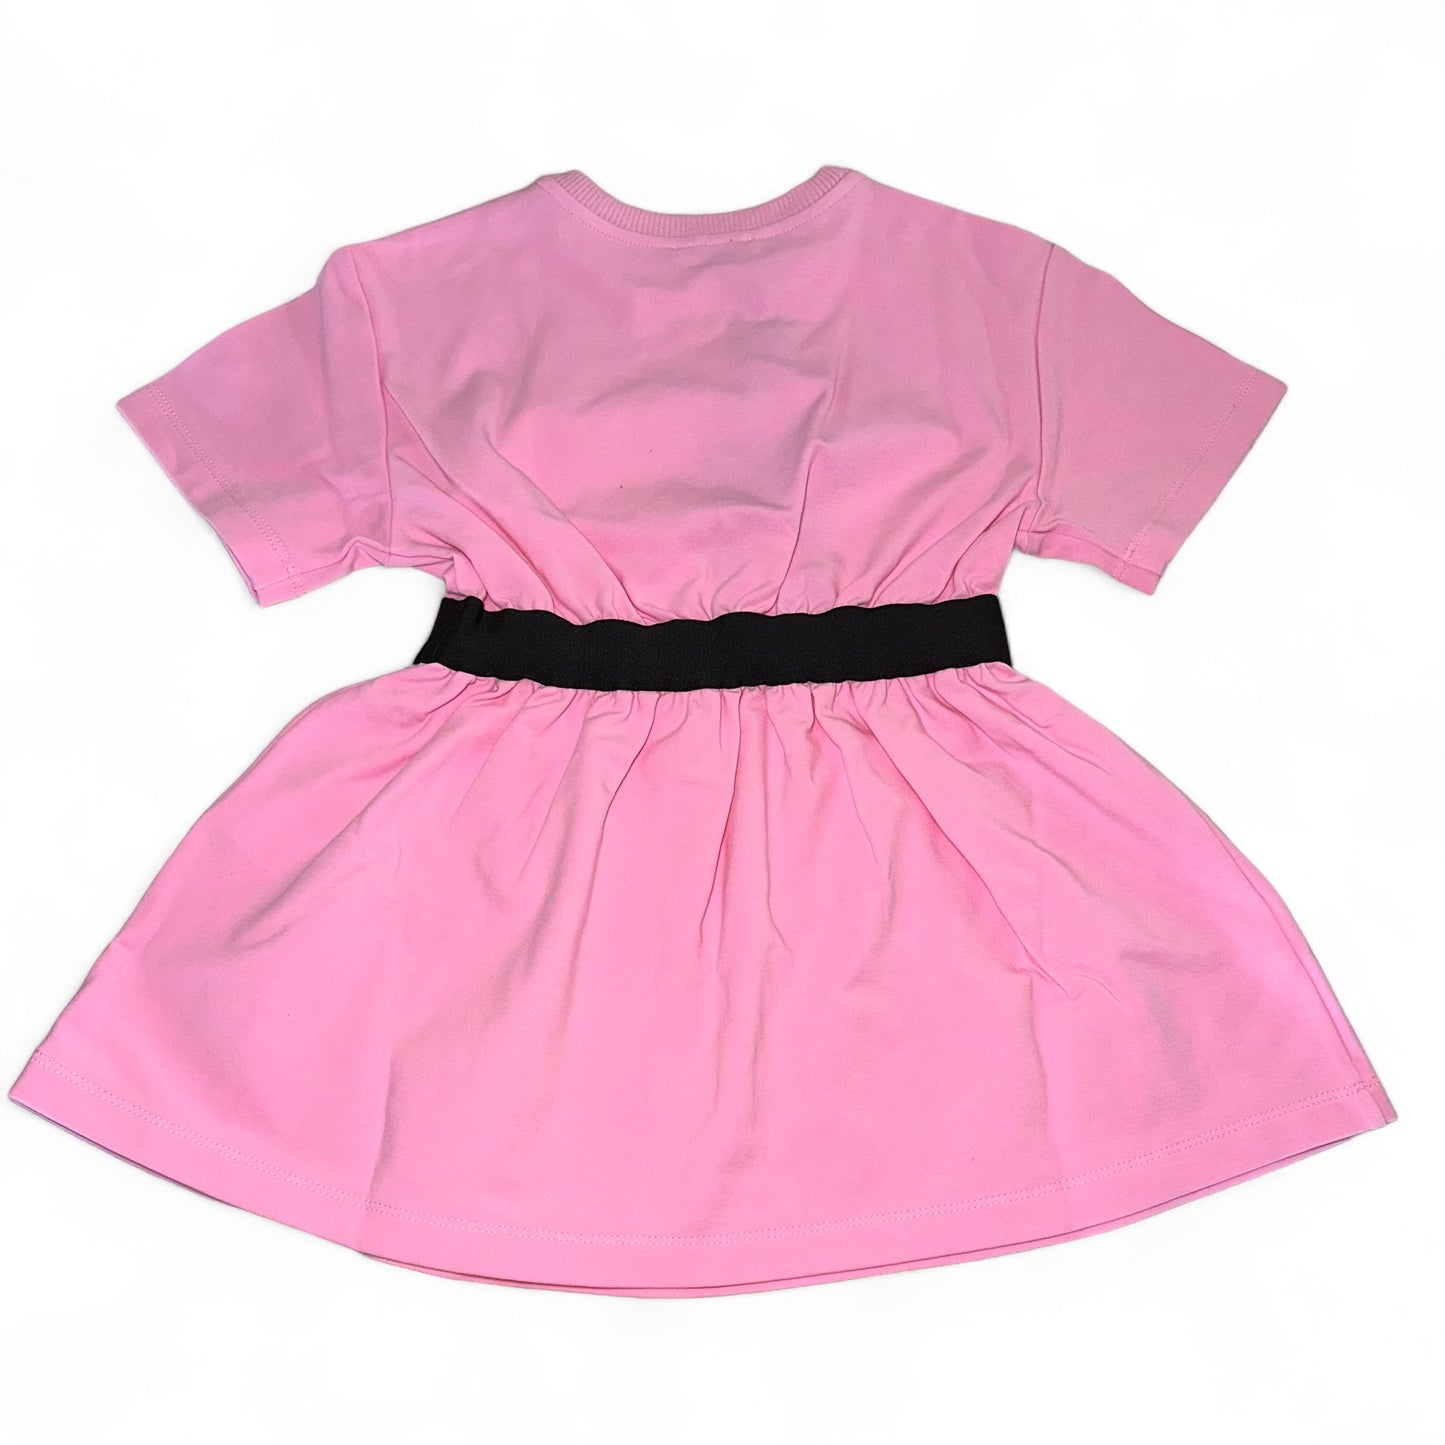 Dolce & Gabbana Pink T-Shirt Dress